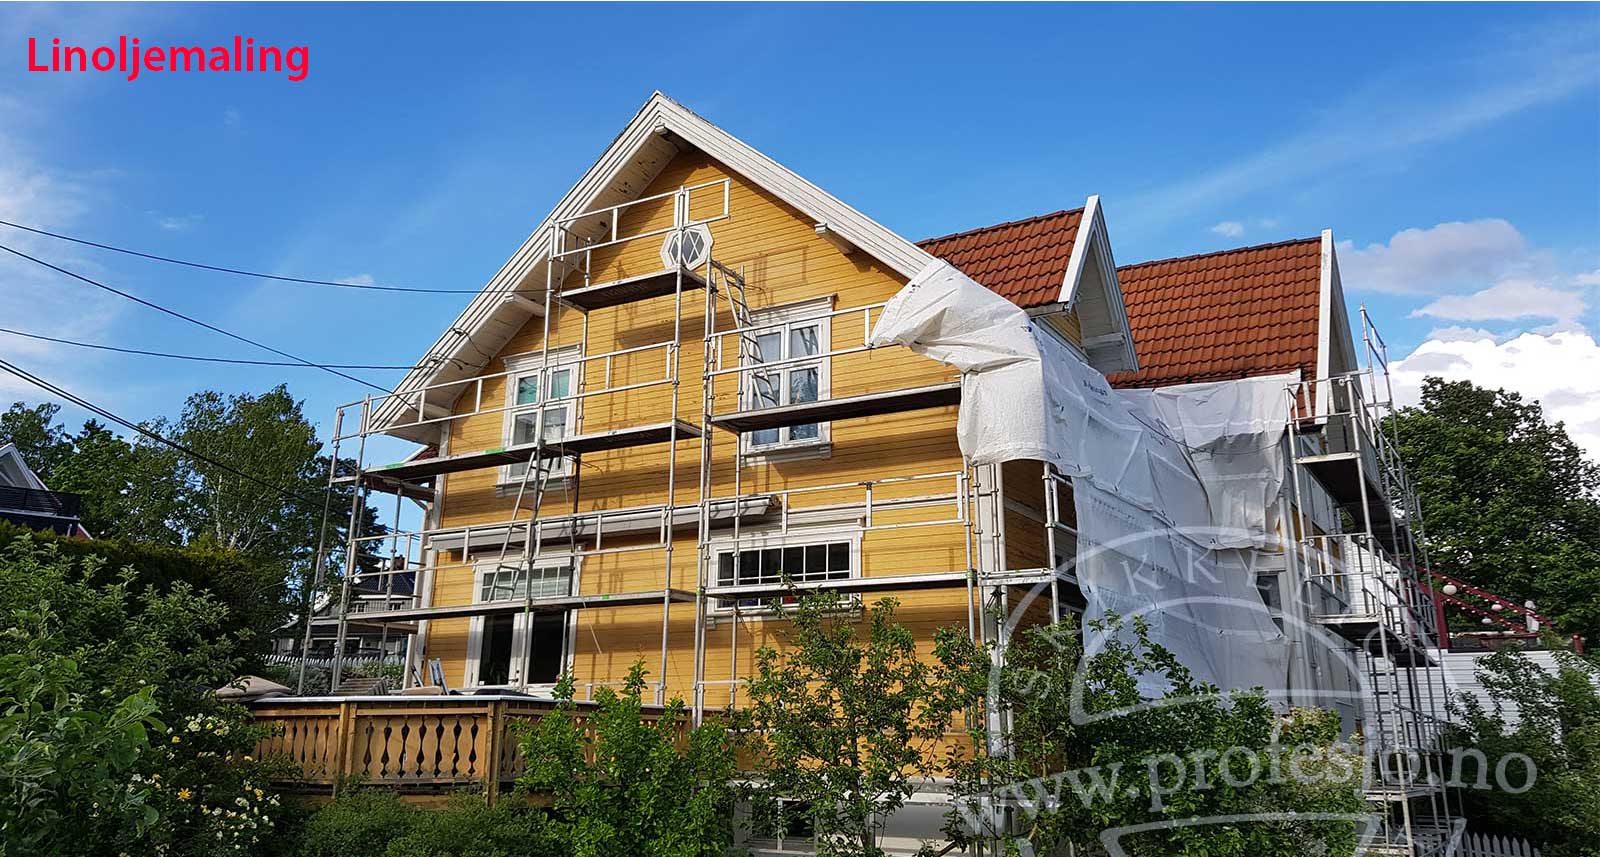 Linoljemaling utvendig - beste valget for å male huset utvendig